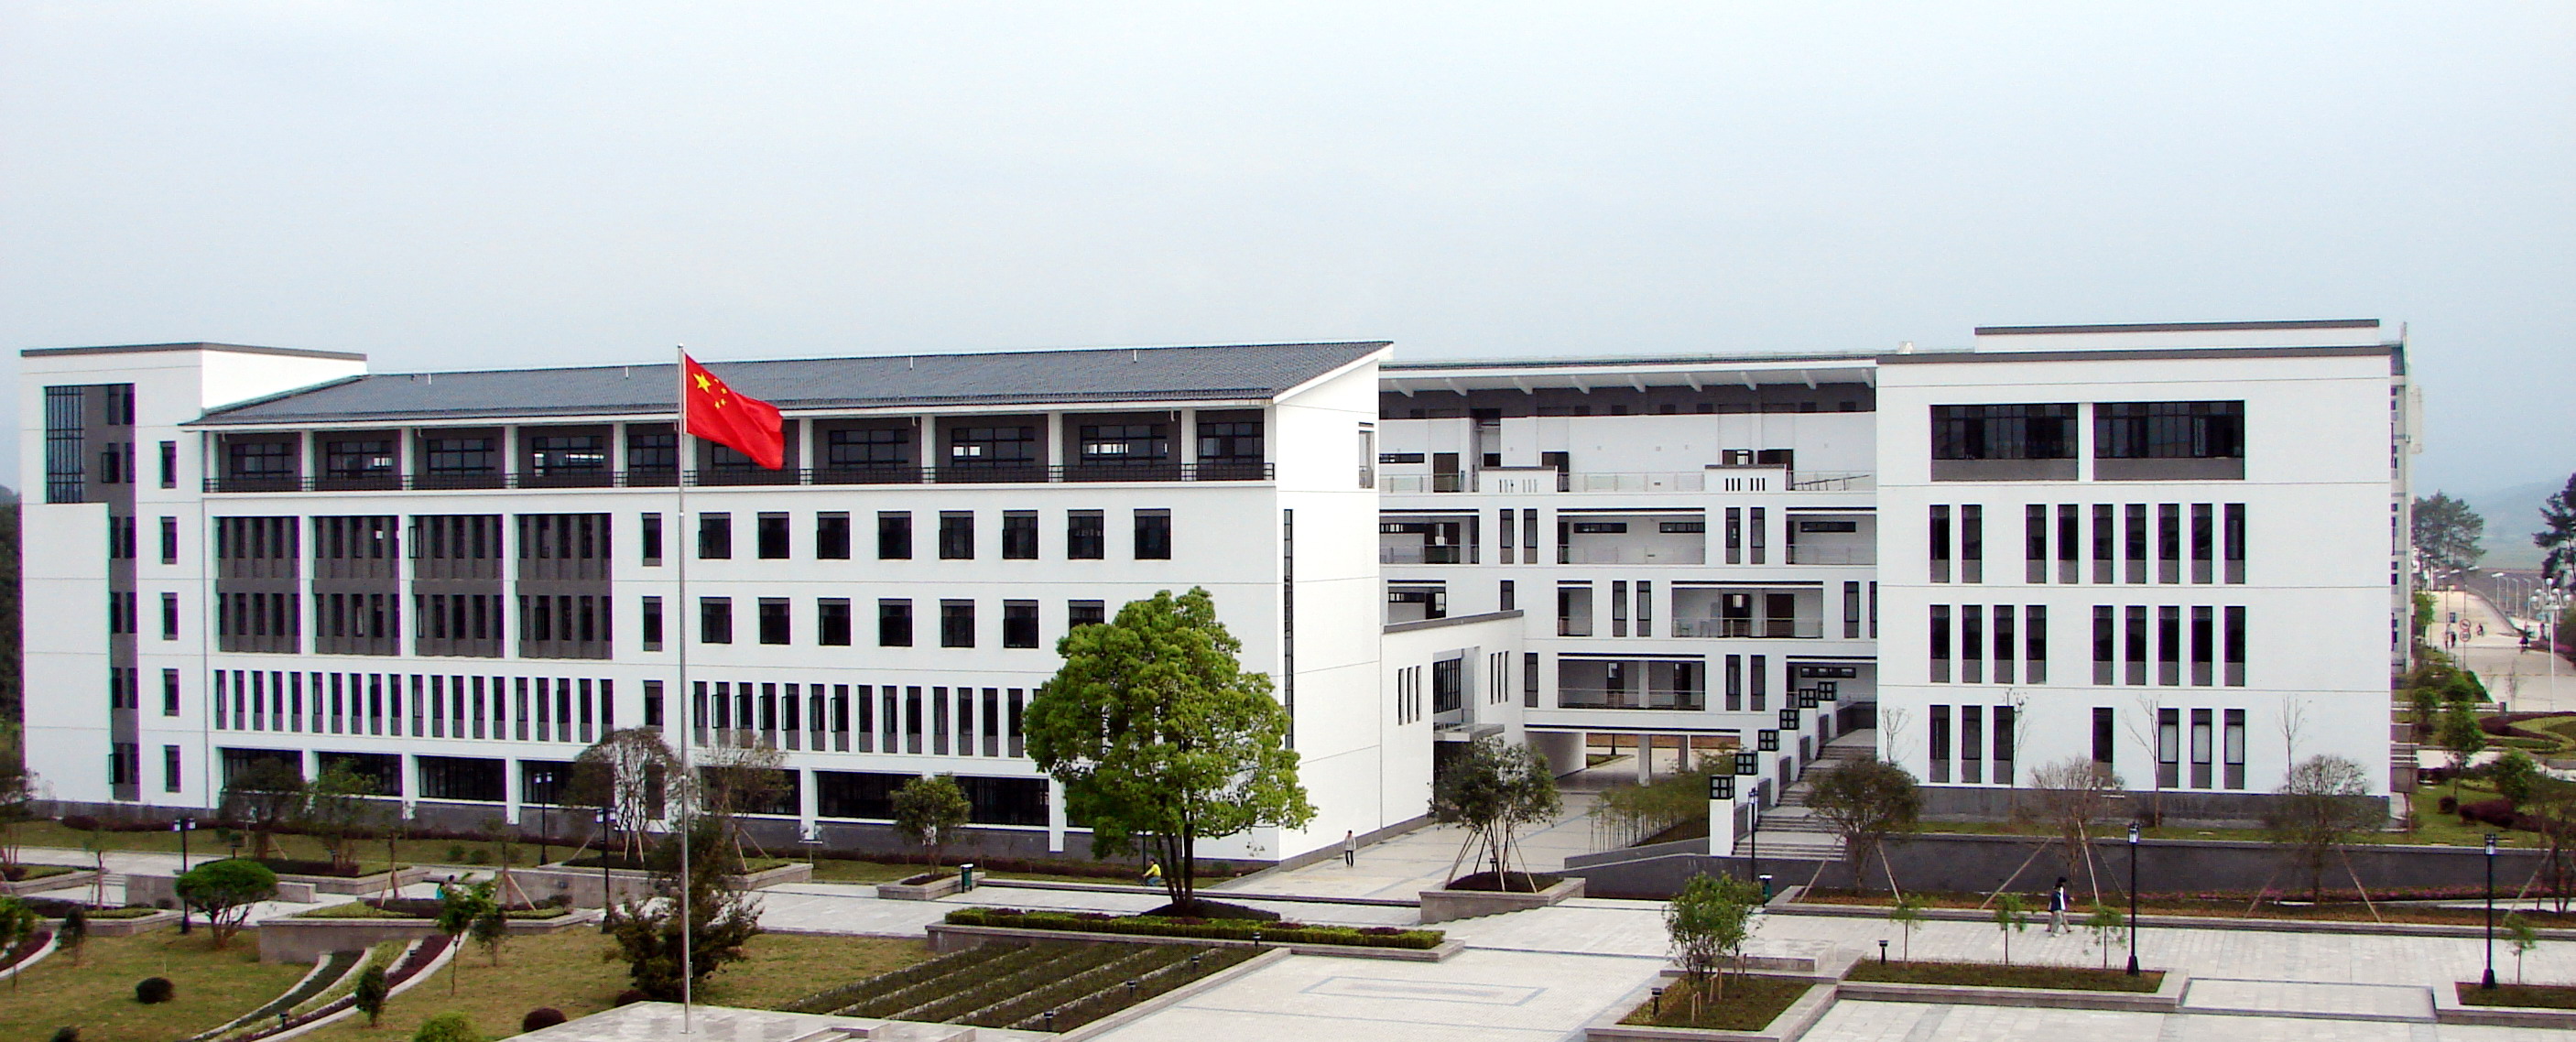 安徽固化学工程第三建筑公司南京分公司